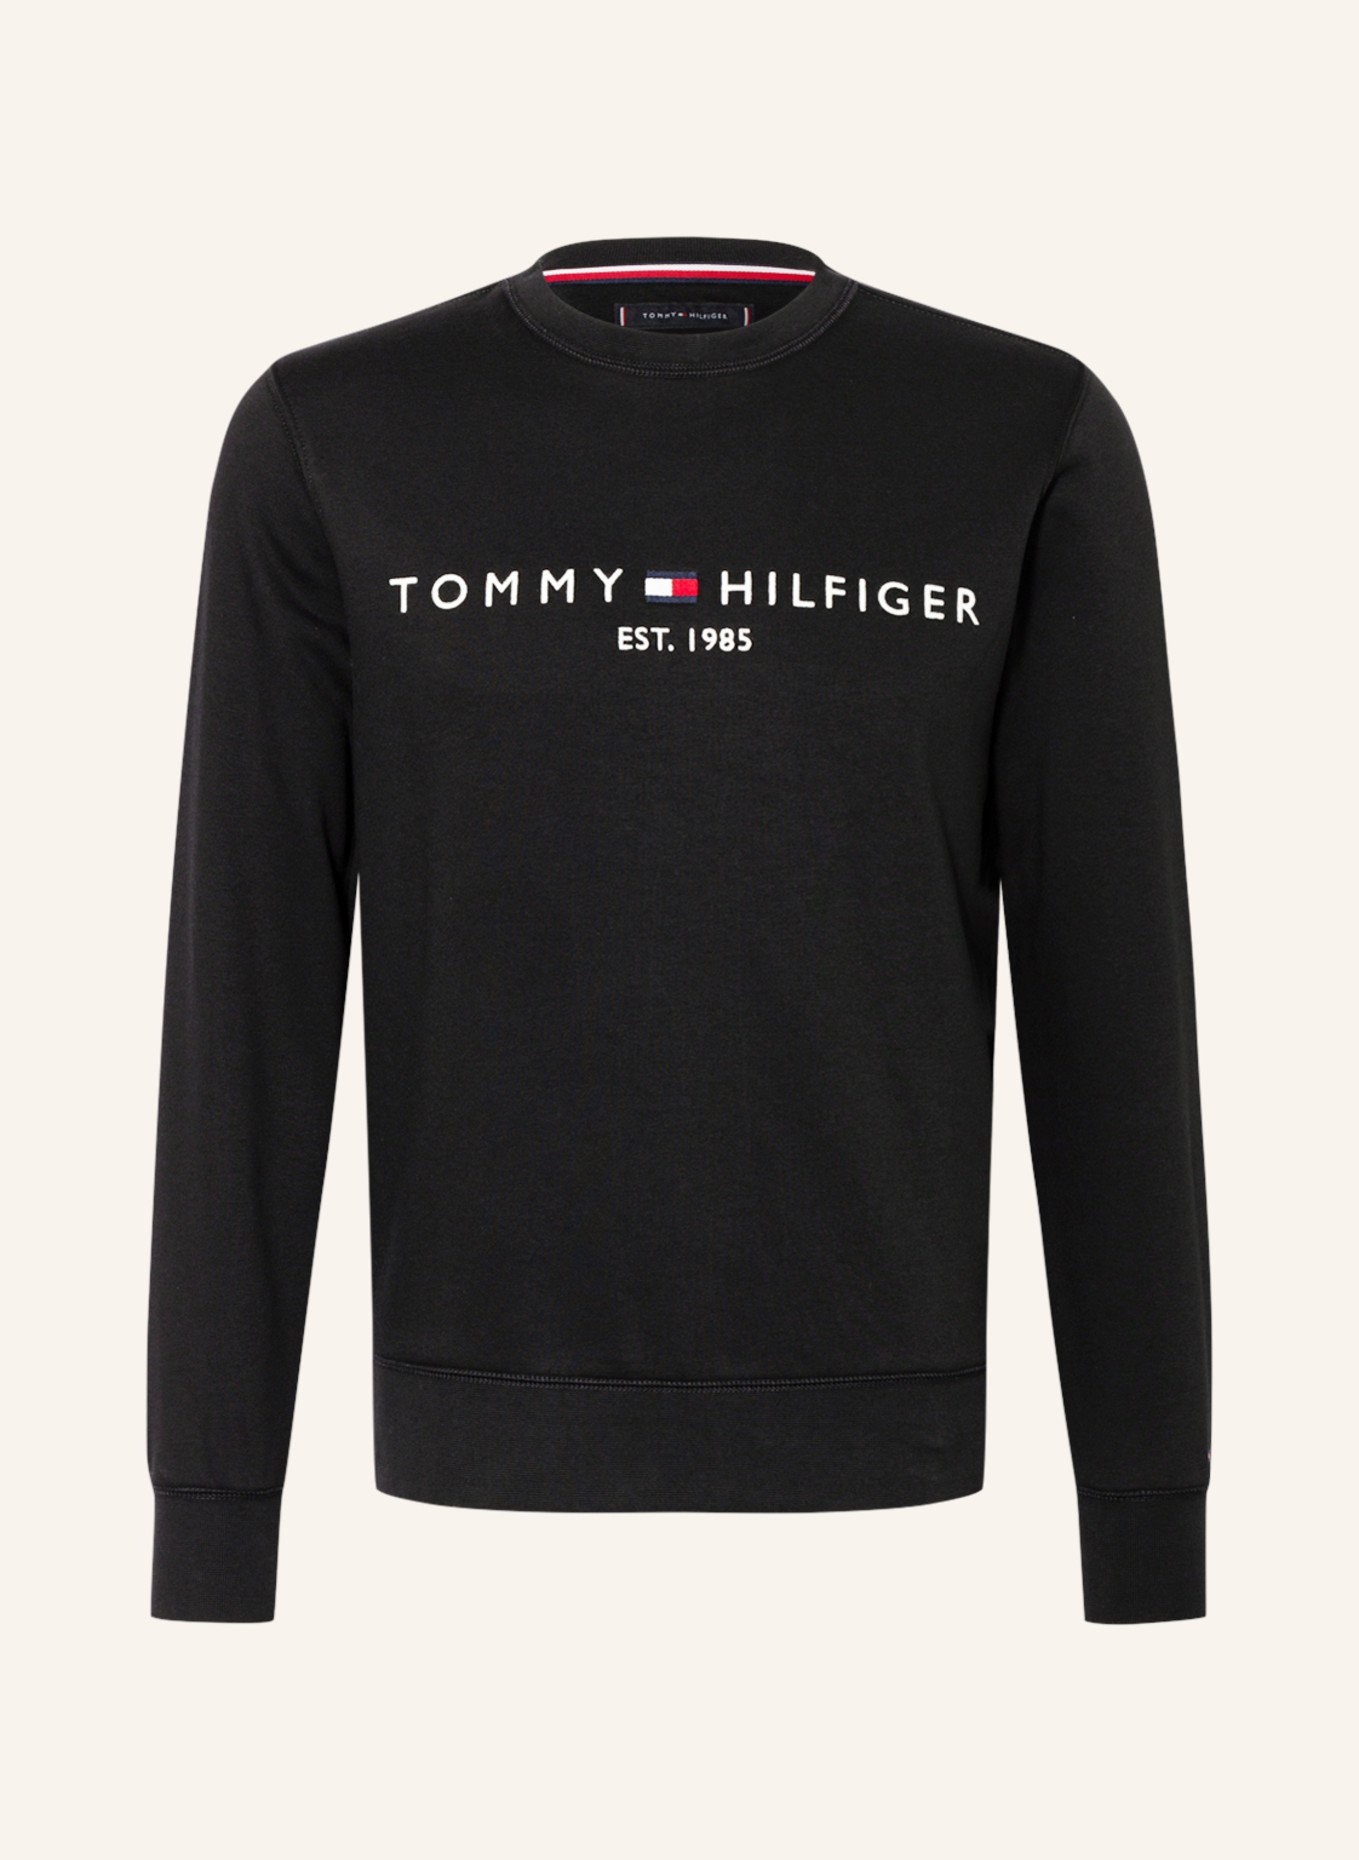 TOMMY HILFIGER Sweatshirt, Farbe: SCHWARZ(Bild null)